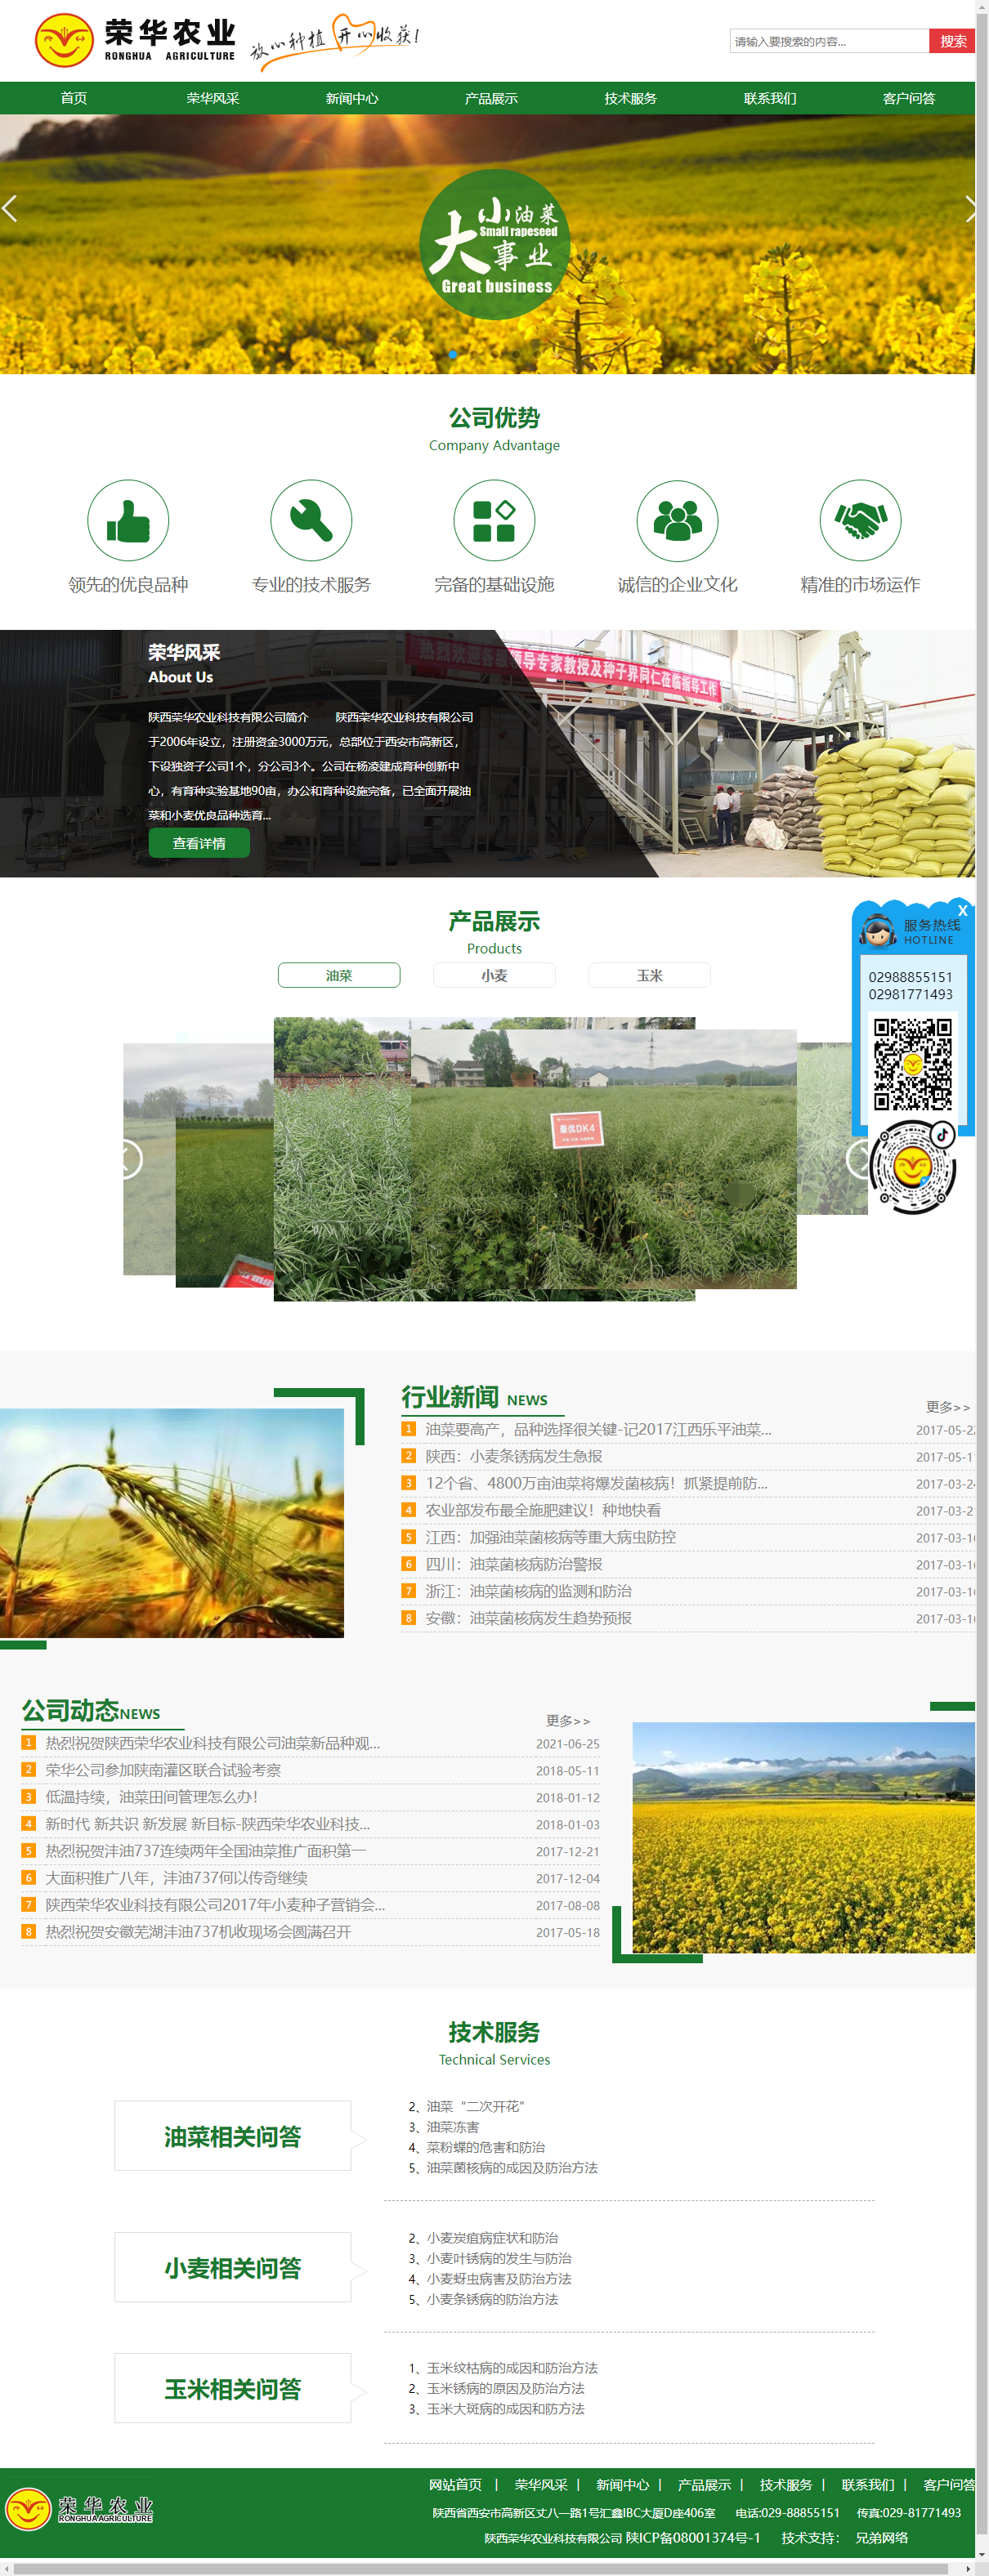 陕西荣华农业科技有限公司网站案例